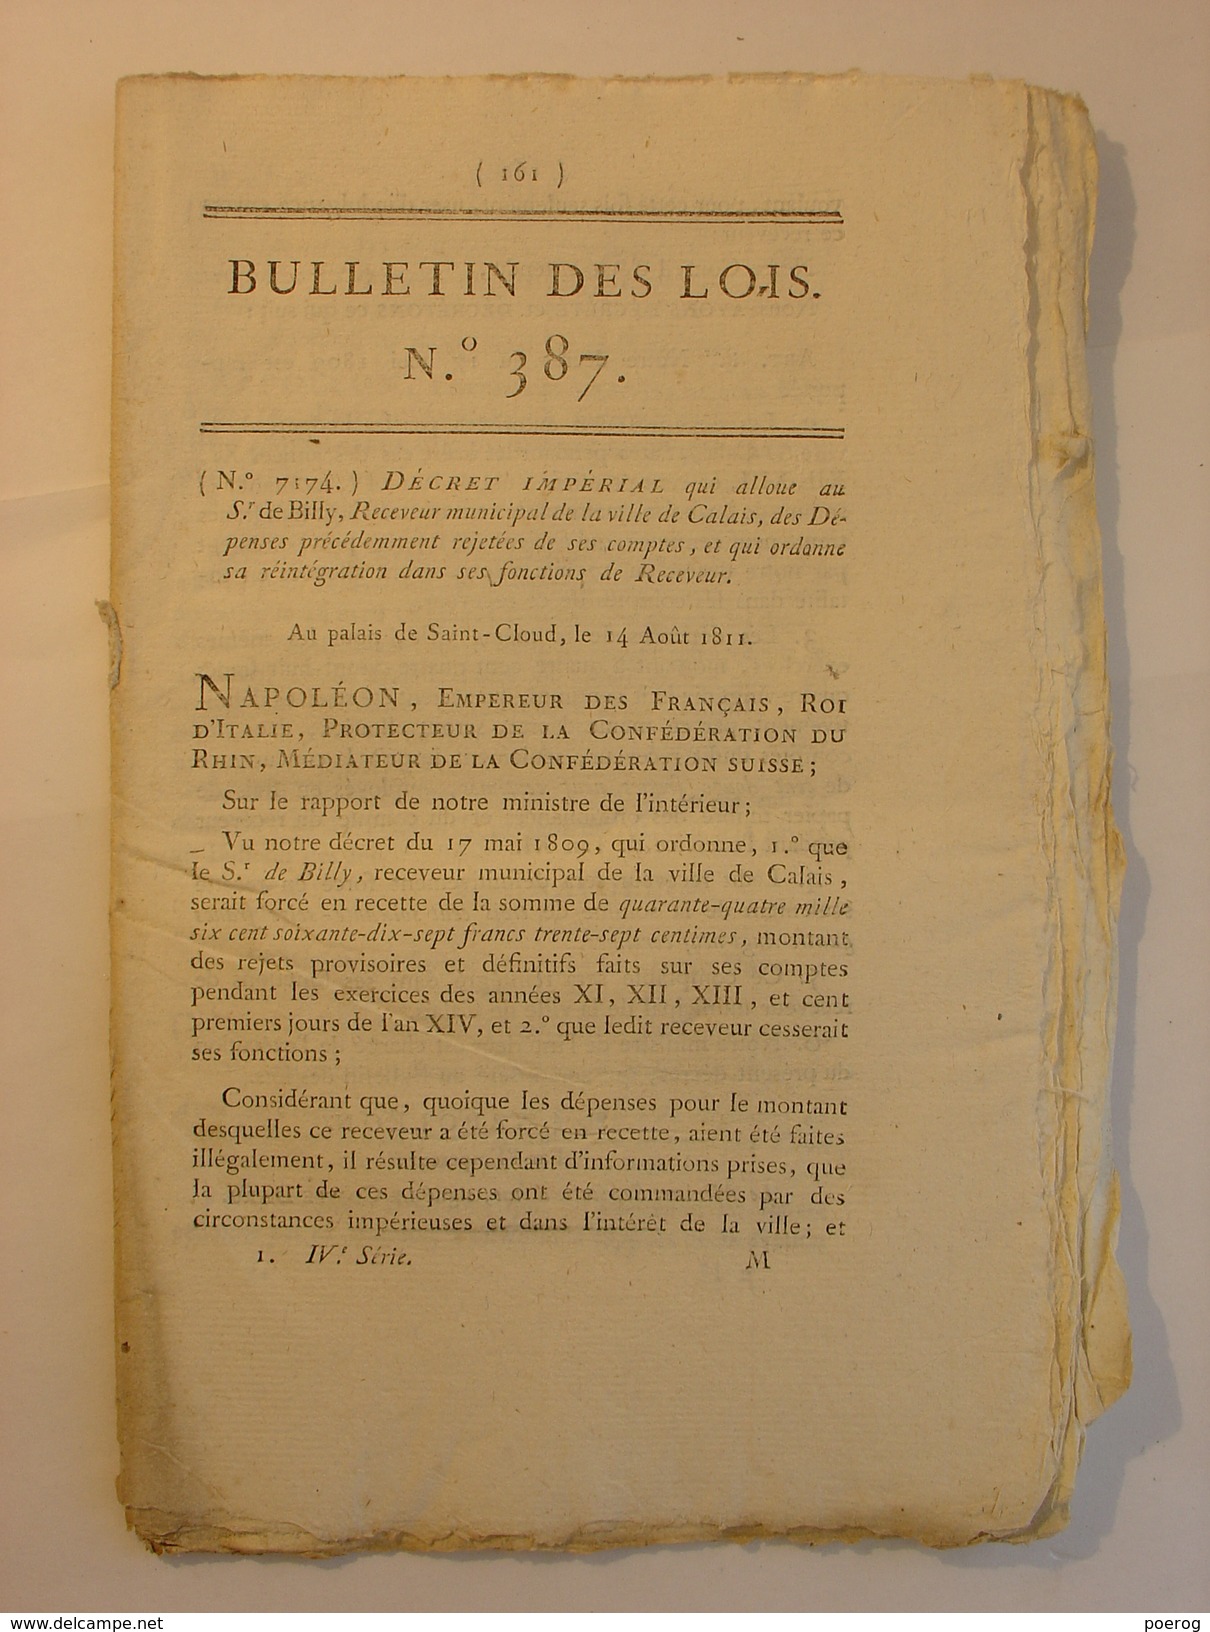 BULLETIN DES LOIS De 1811 - CALAIS MINES DE FER SARRE MOSELLE AMNISTIE BANNISSEMENT HOLLANDE BELGIQUE DROITS D'AUTEURS - Gesetze & Erlasse